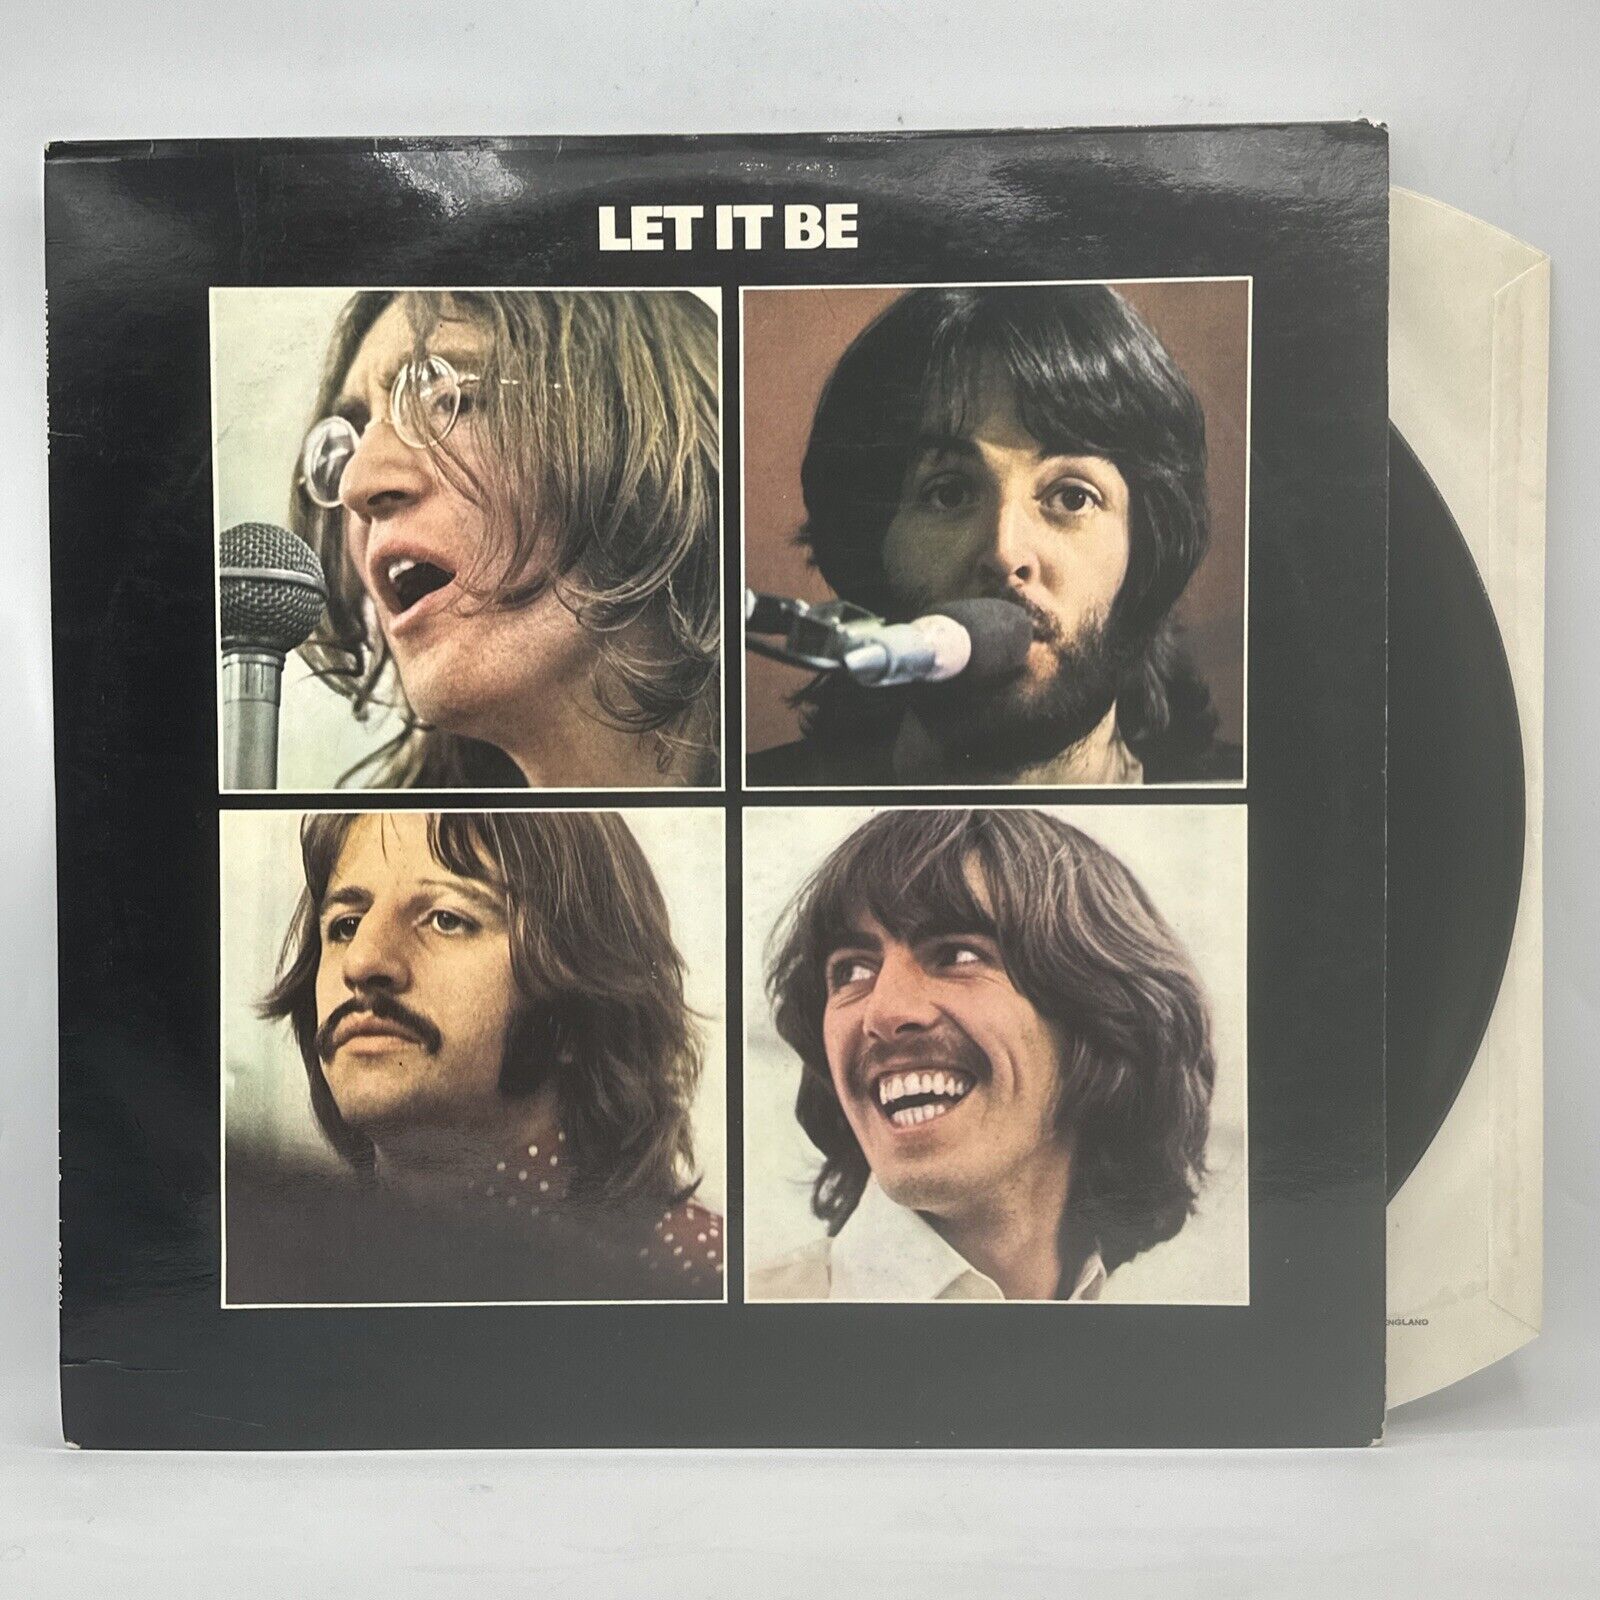 The Beatles - Let It Be - 1970 UK Apple 2U/3U Red Apple (EX) Ultrasonic Clean